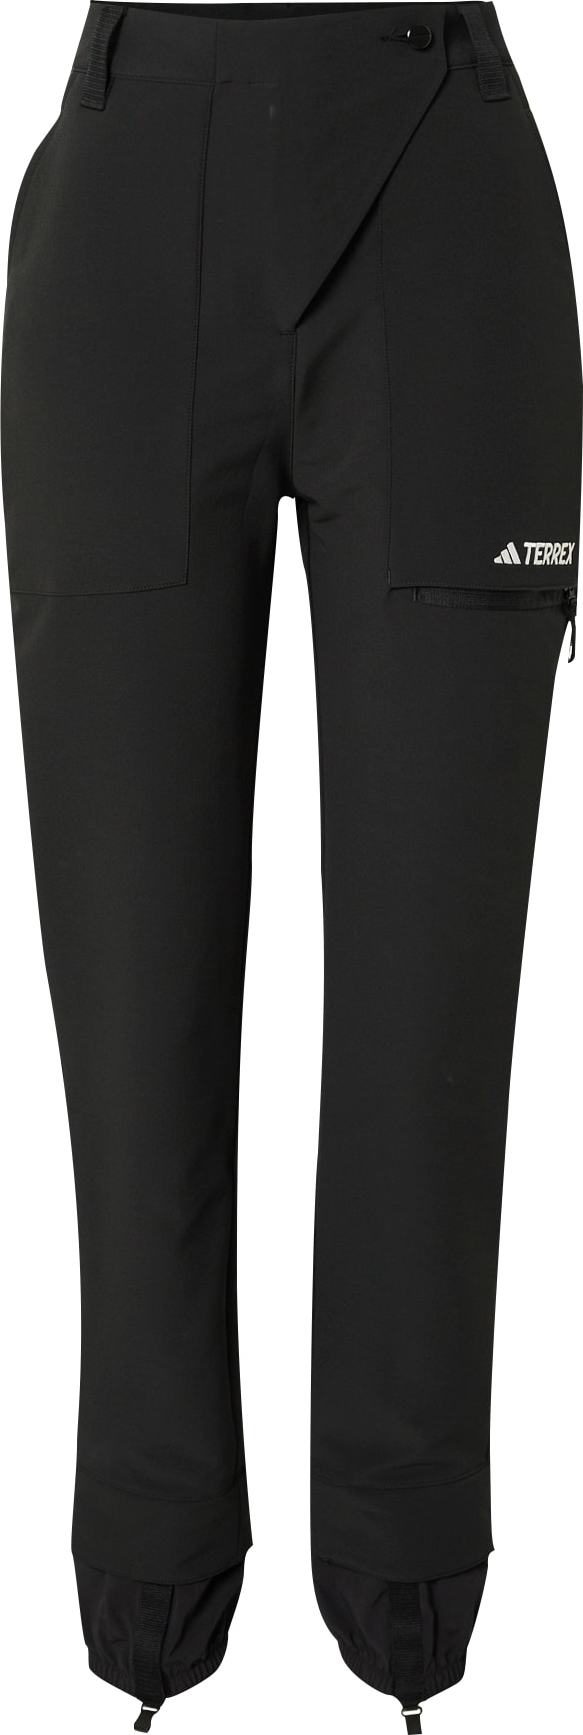 Outdoorové kalhoty 'Xperior Yearound' adidas Terrex černá / bílá